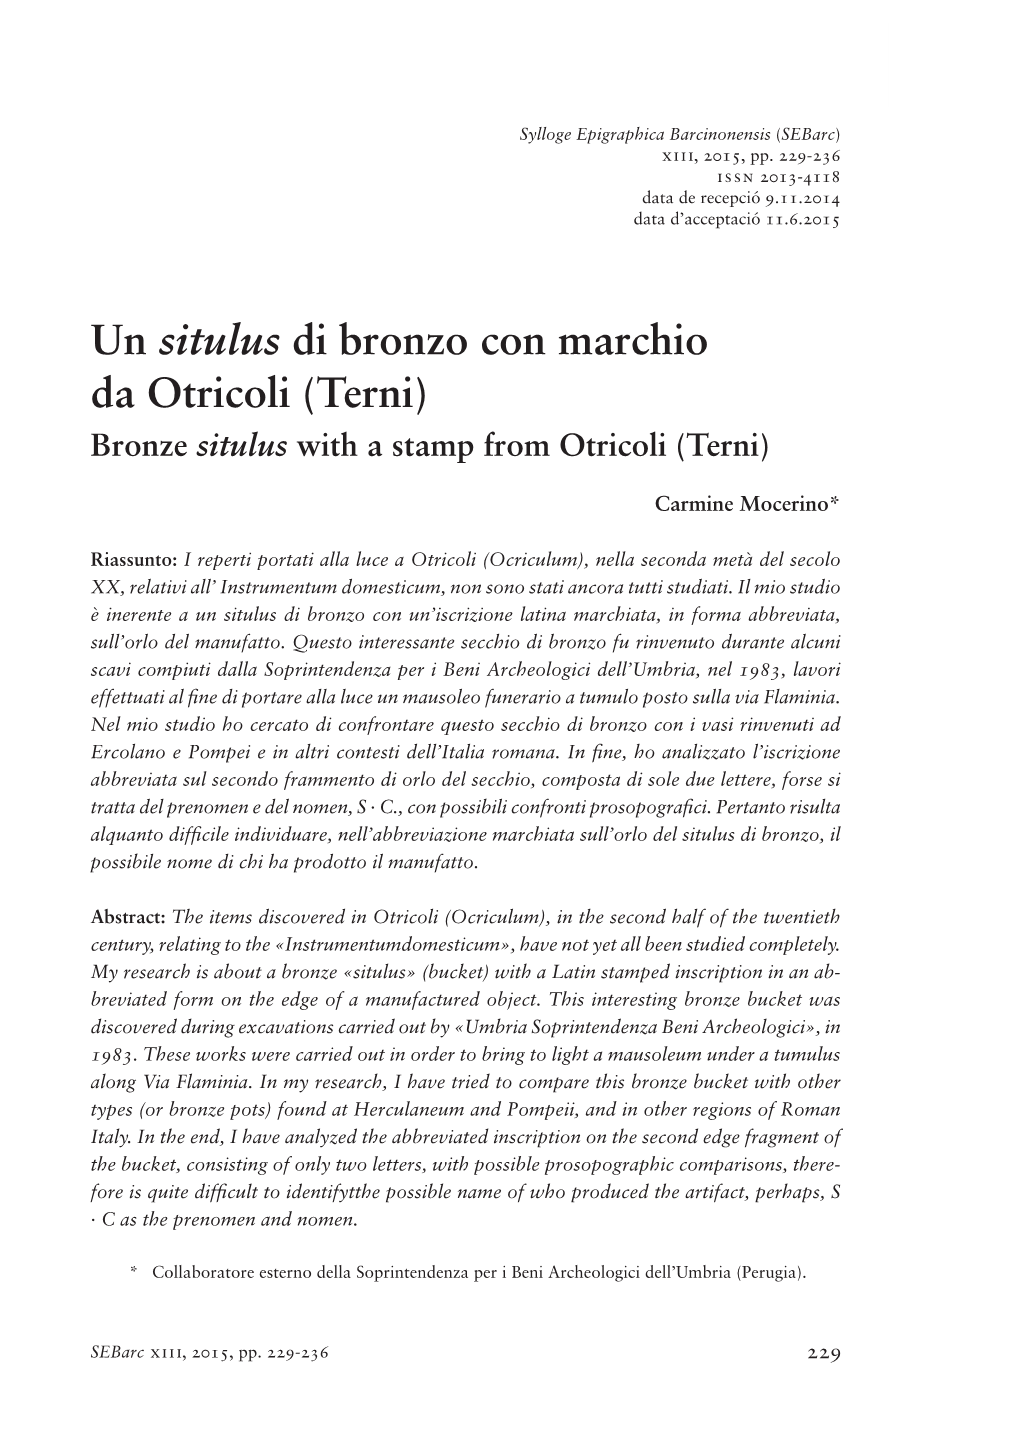 Un Situlus Di Bronzo Con Marchio Da Otricoli (Terni) Bronze Situlus with a Stamp from Otricoli (Terni)